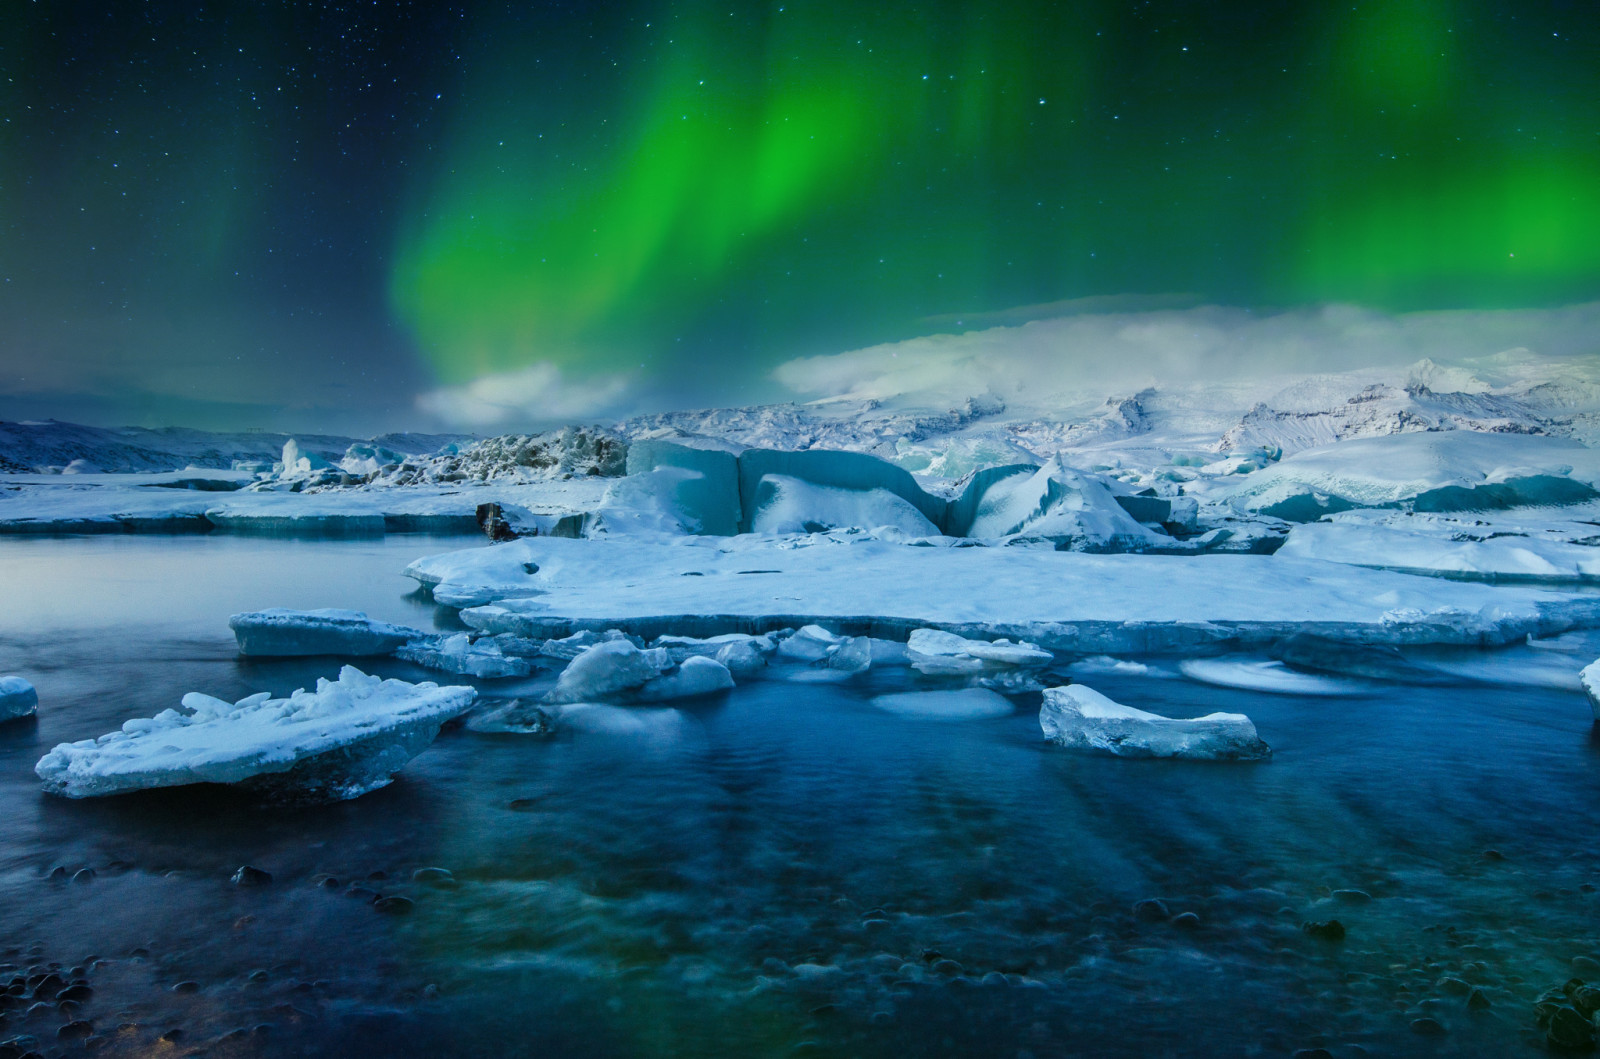 雪, 湖, 冰, 冬季, 灯, 极光, 星星, 冰岛